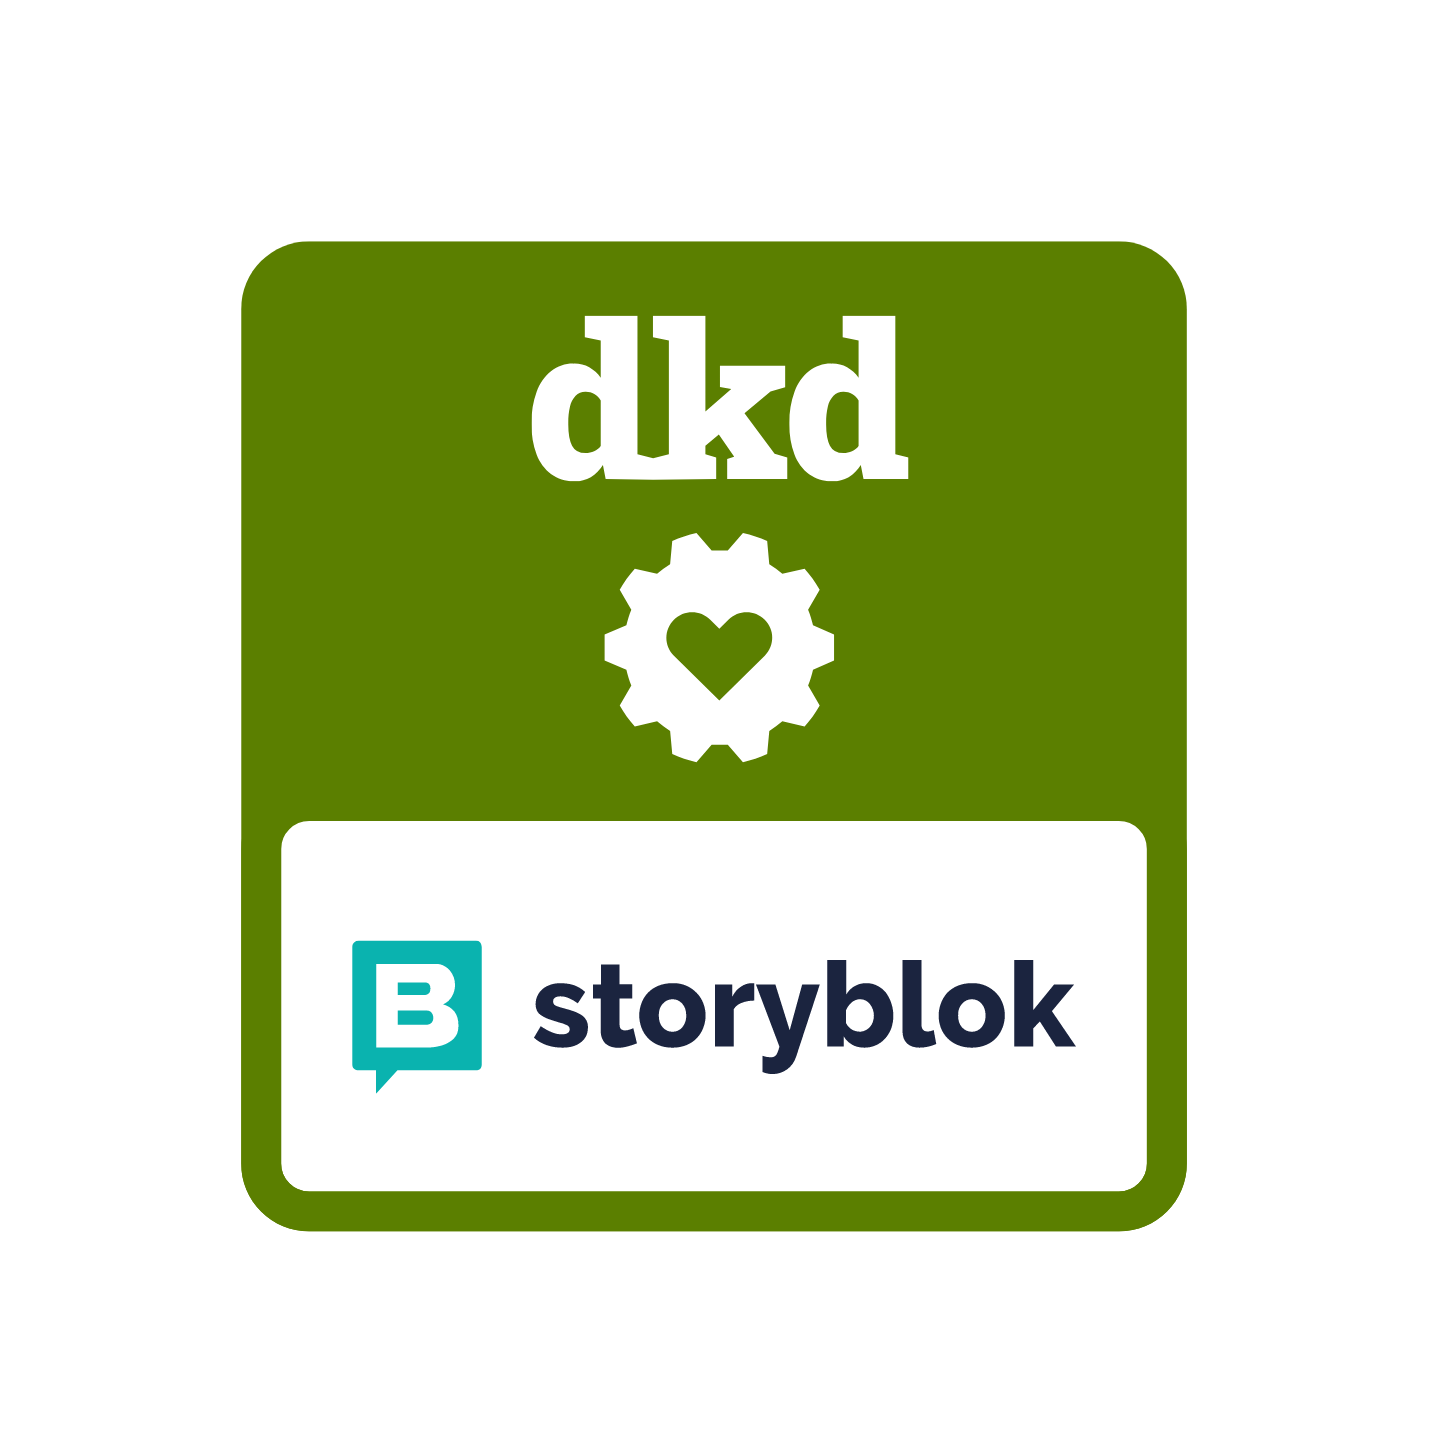 Weisses dkd-Logo auf grünem Hintergrund mit Storyblok-Logo